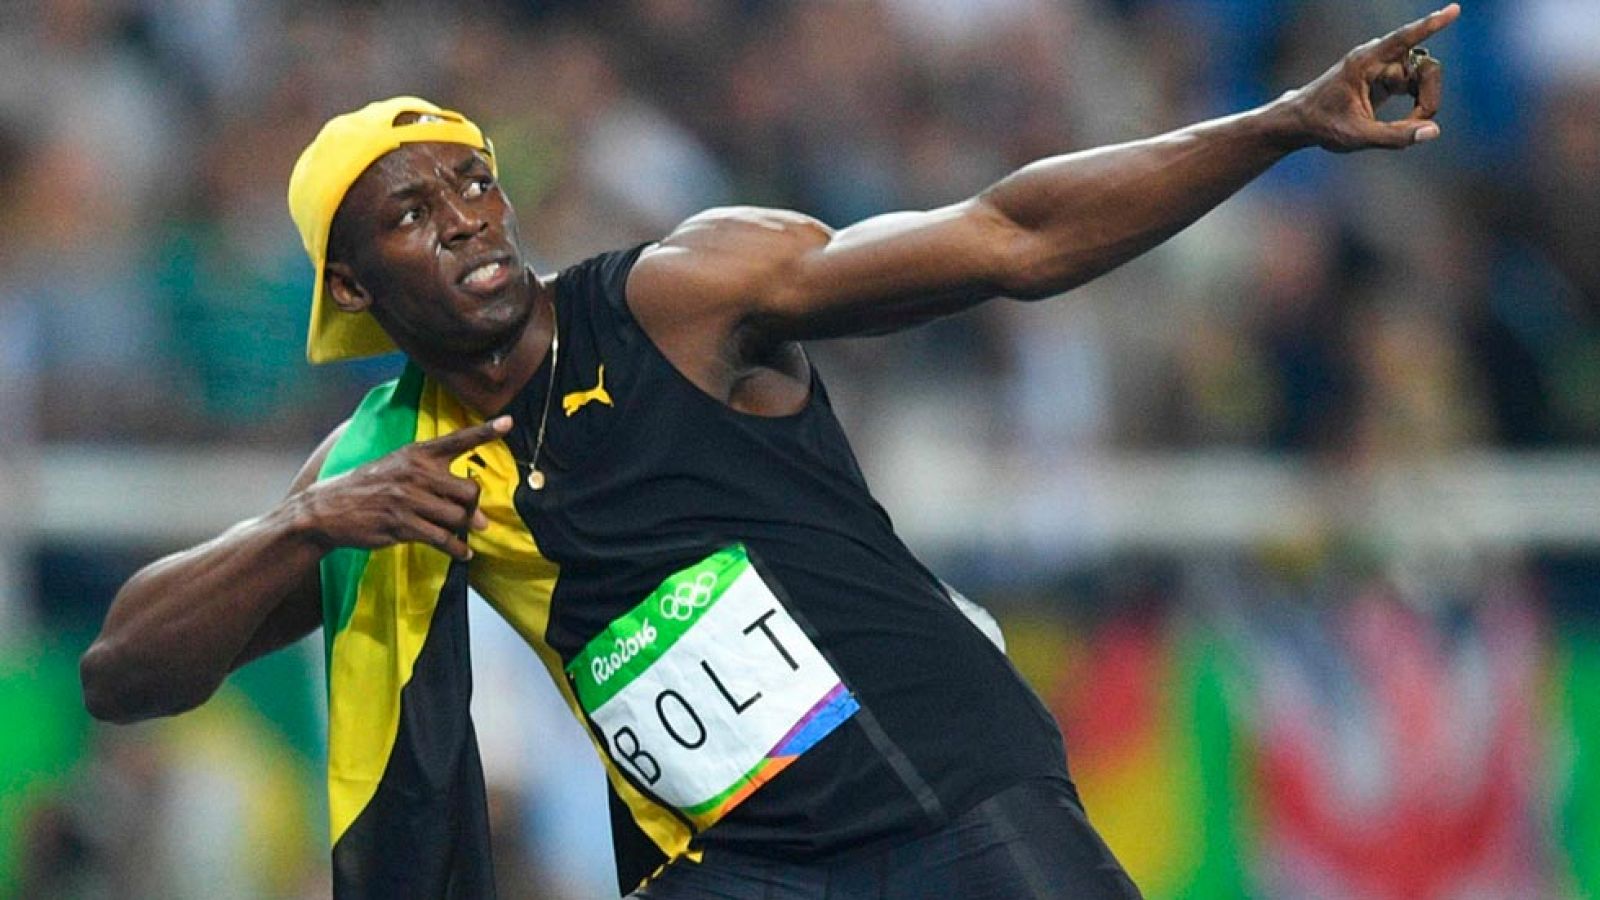 Video de Usain Bolt en los 100m - Río 2016